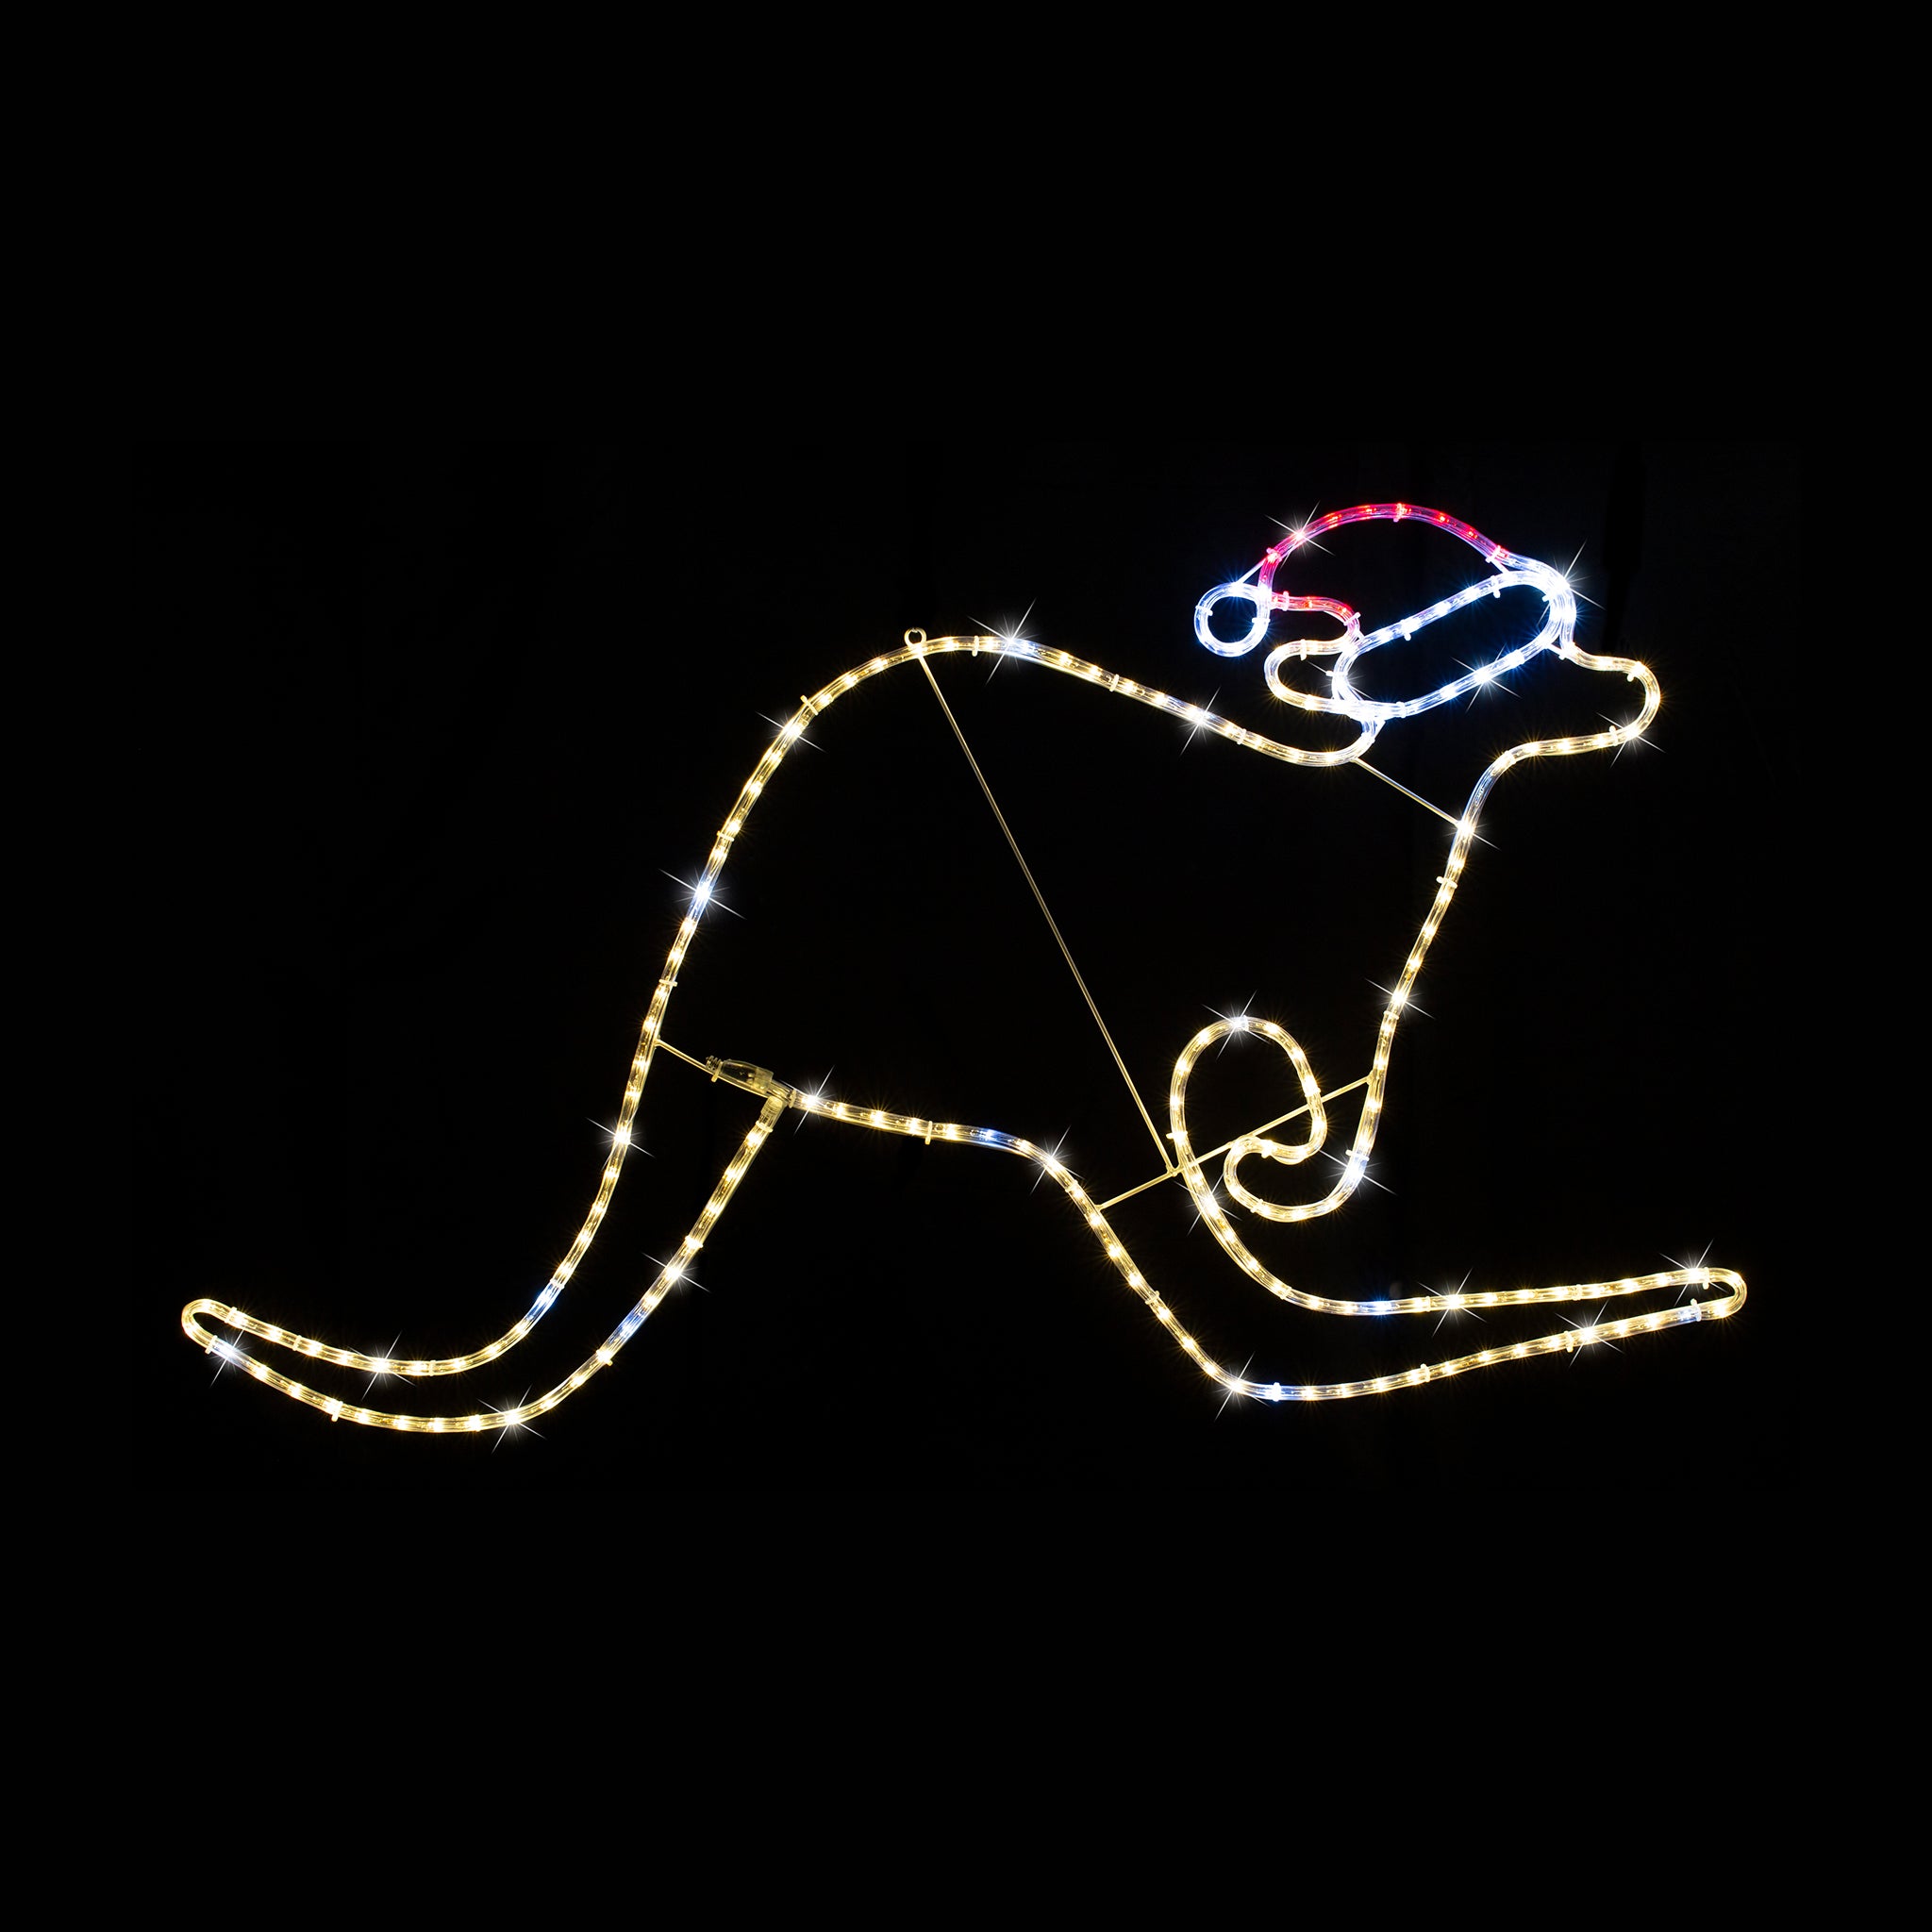 LED Rope Light Kangaroo Twinkle